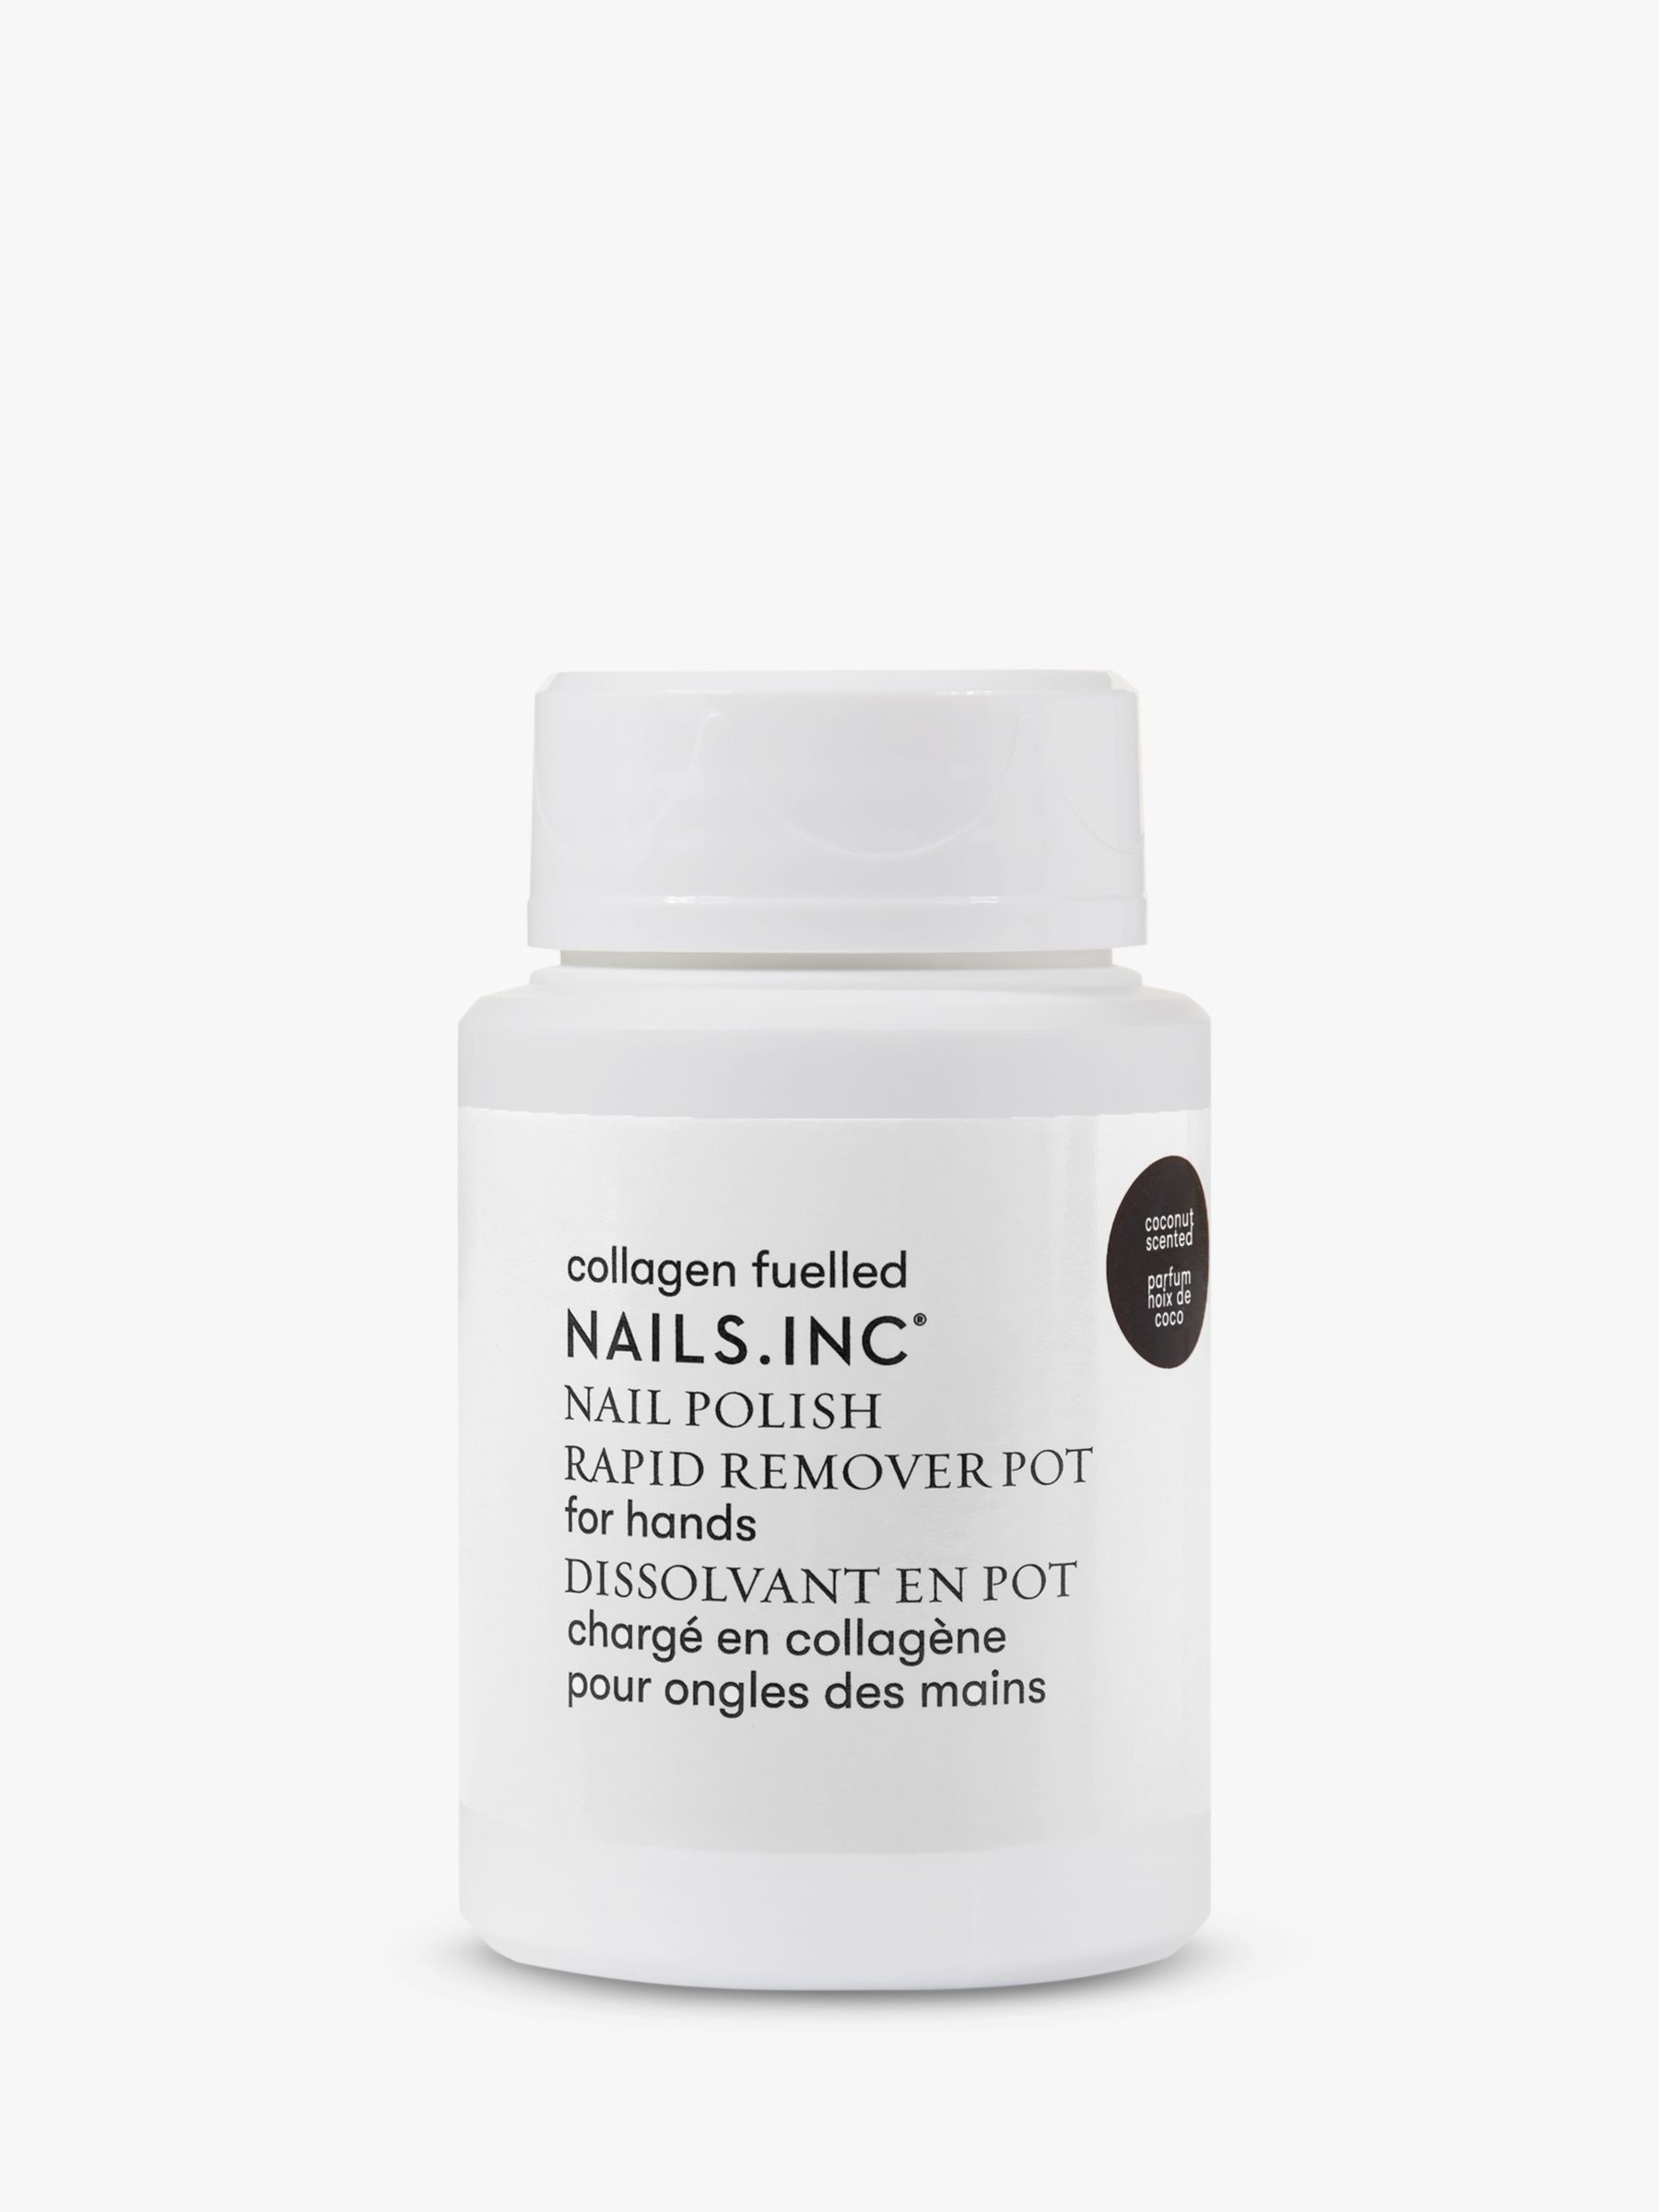 Nails Inc Express Nail Polish Remover, 50ml